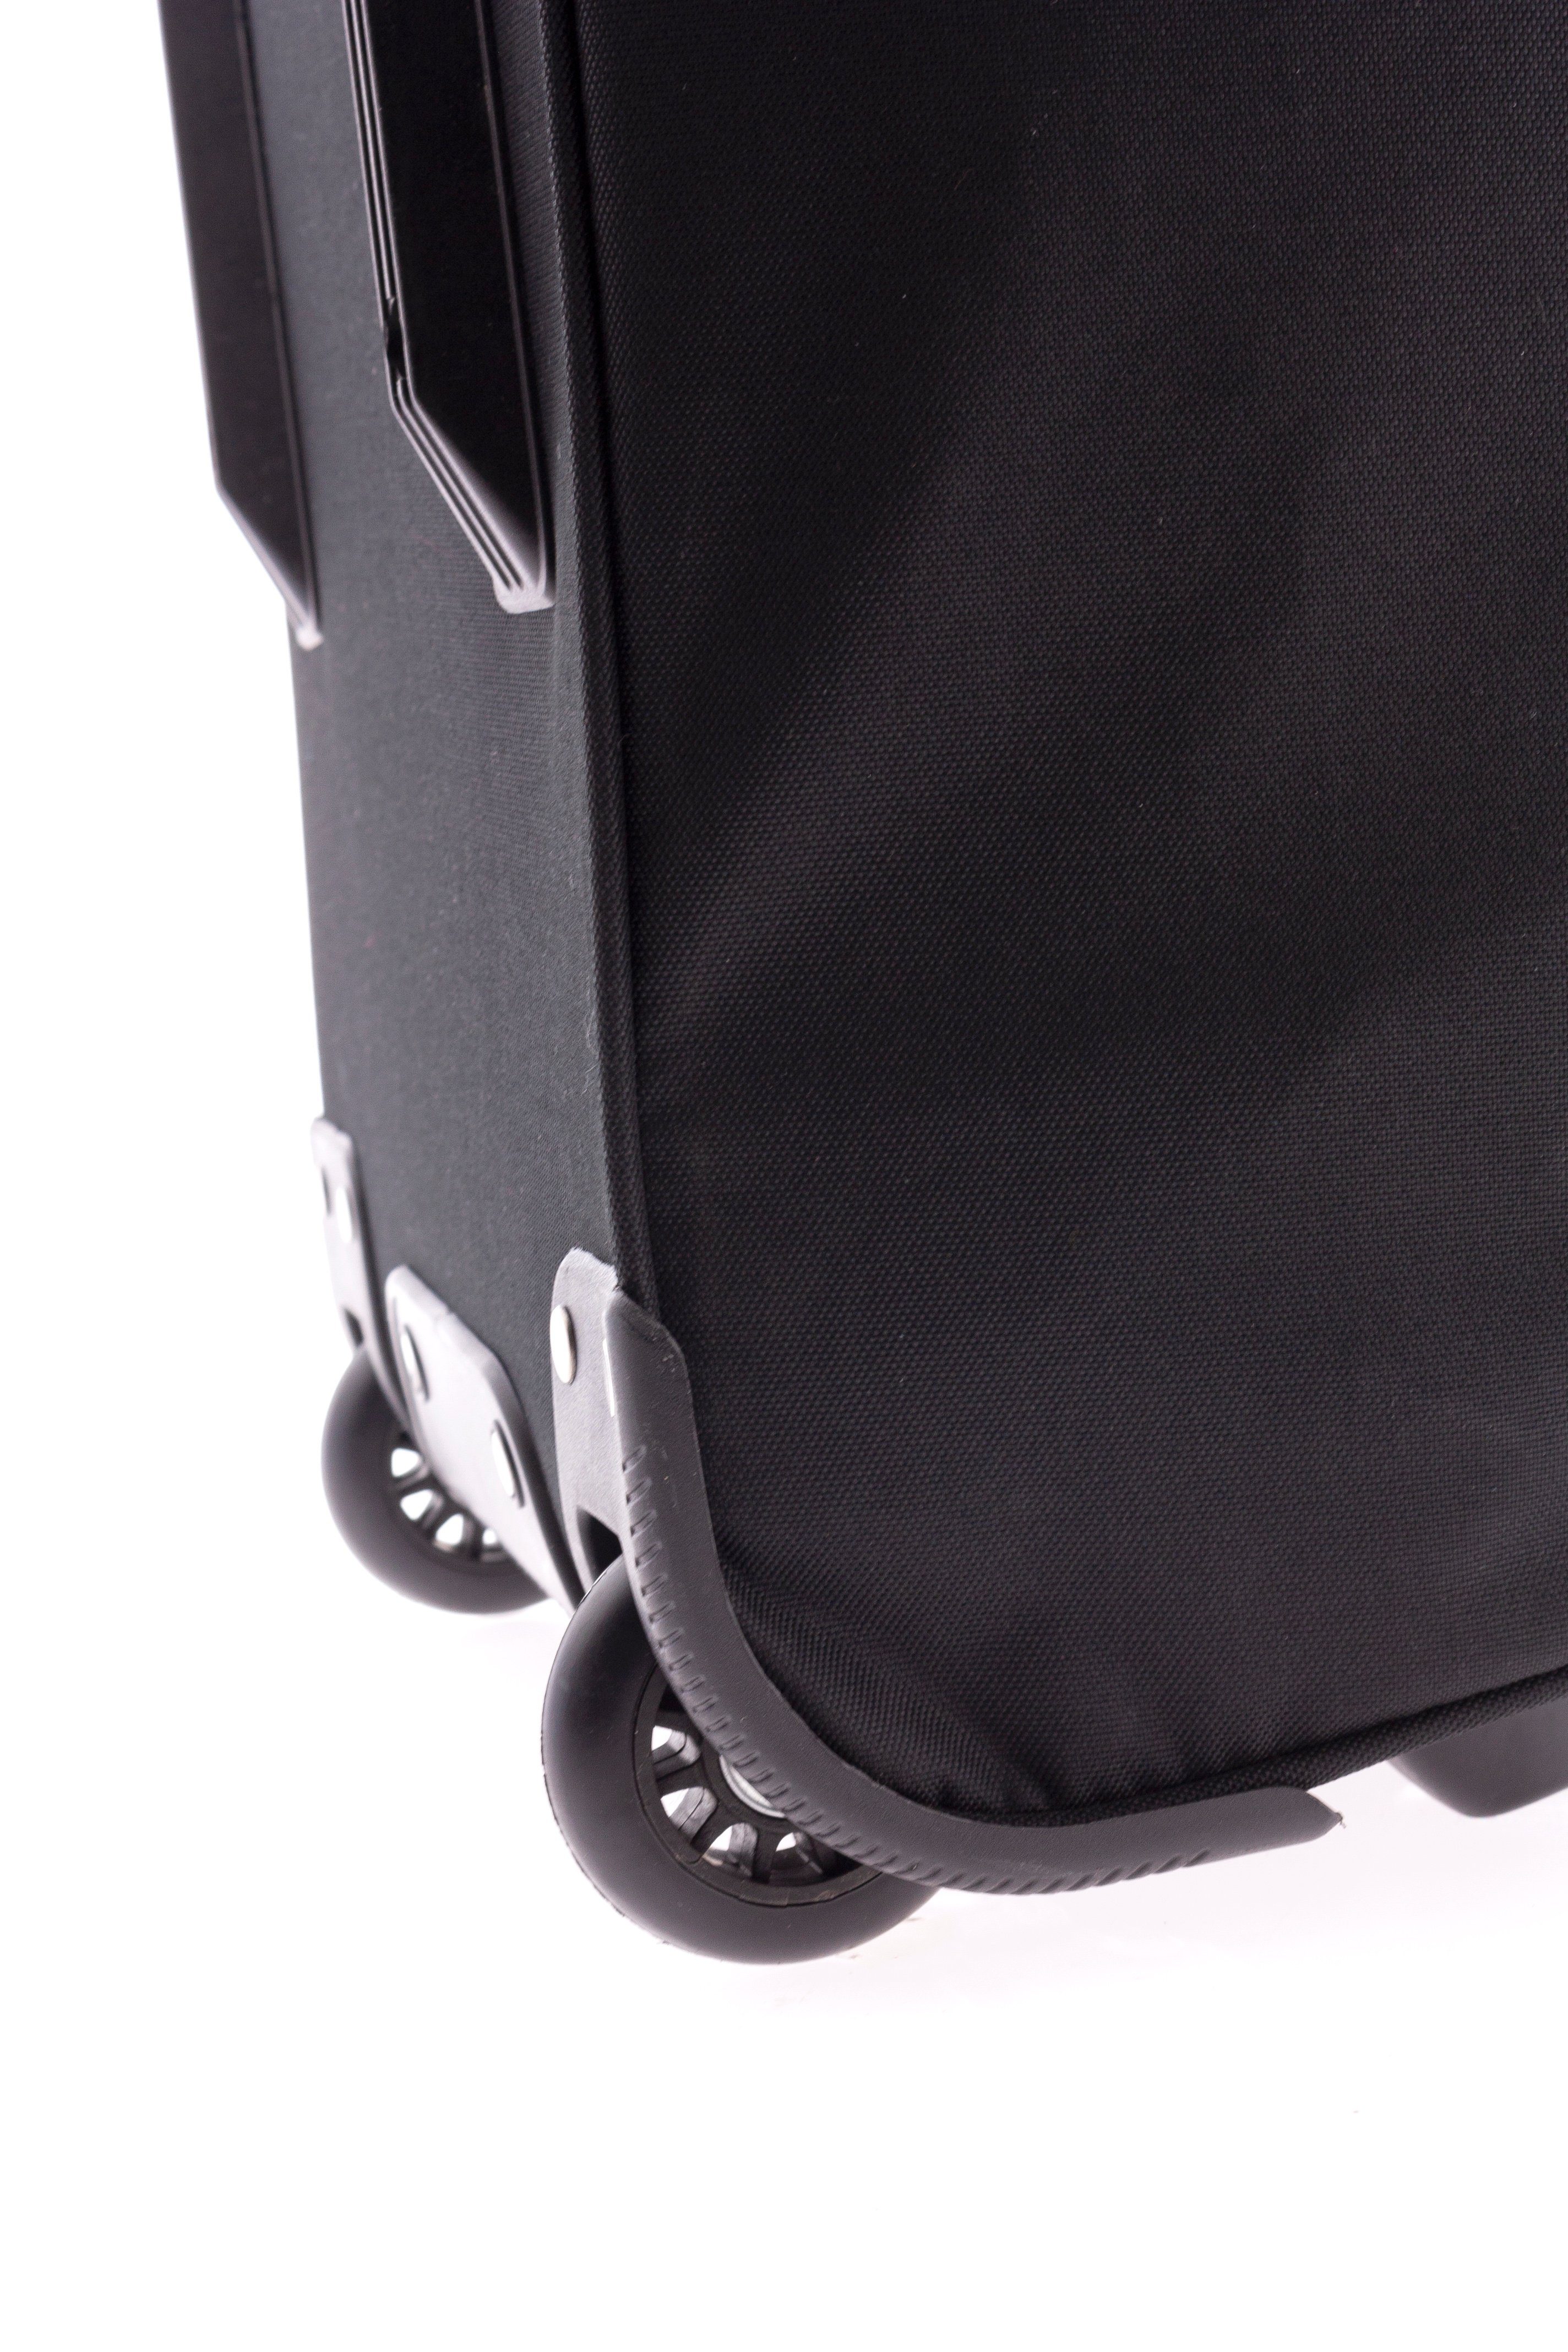 Reisetasche od. kg, Rollentasche, schwarz, - Rollen Trolleytasche, GLADIATOR blau 2,4 cm Gewicht: - 72 - rot Sporttasche - mit 76Liter Trolley-Reisetasche